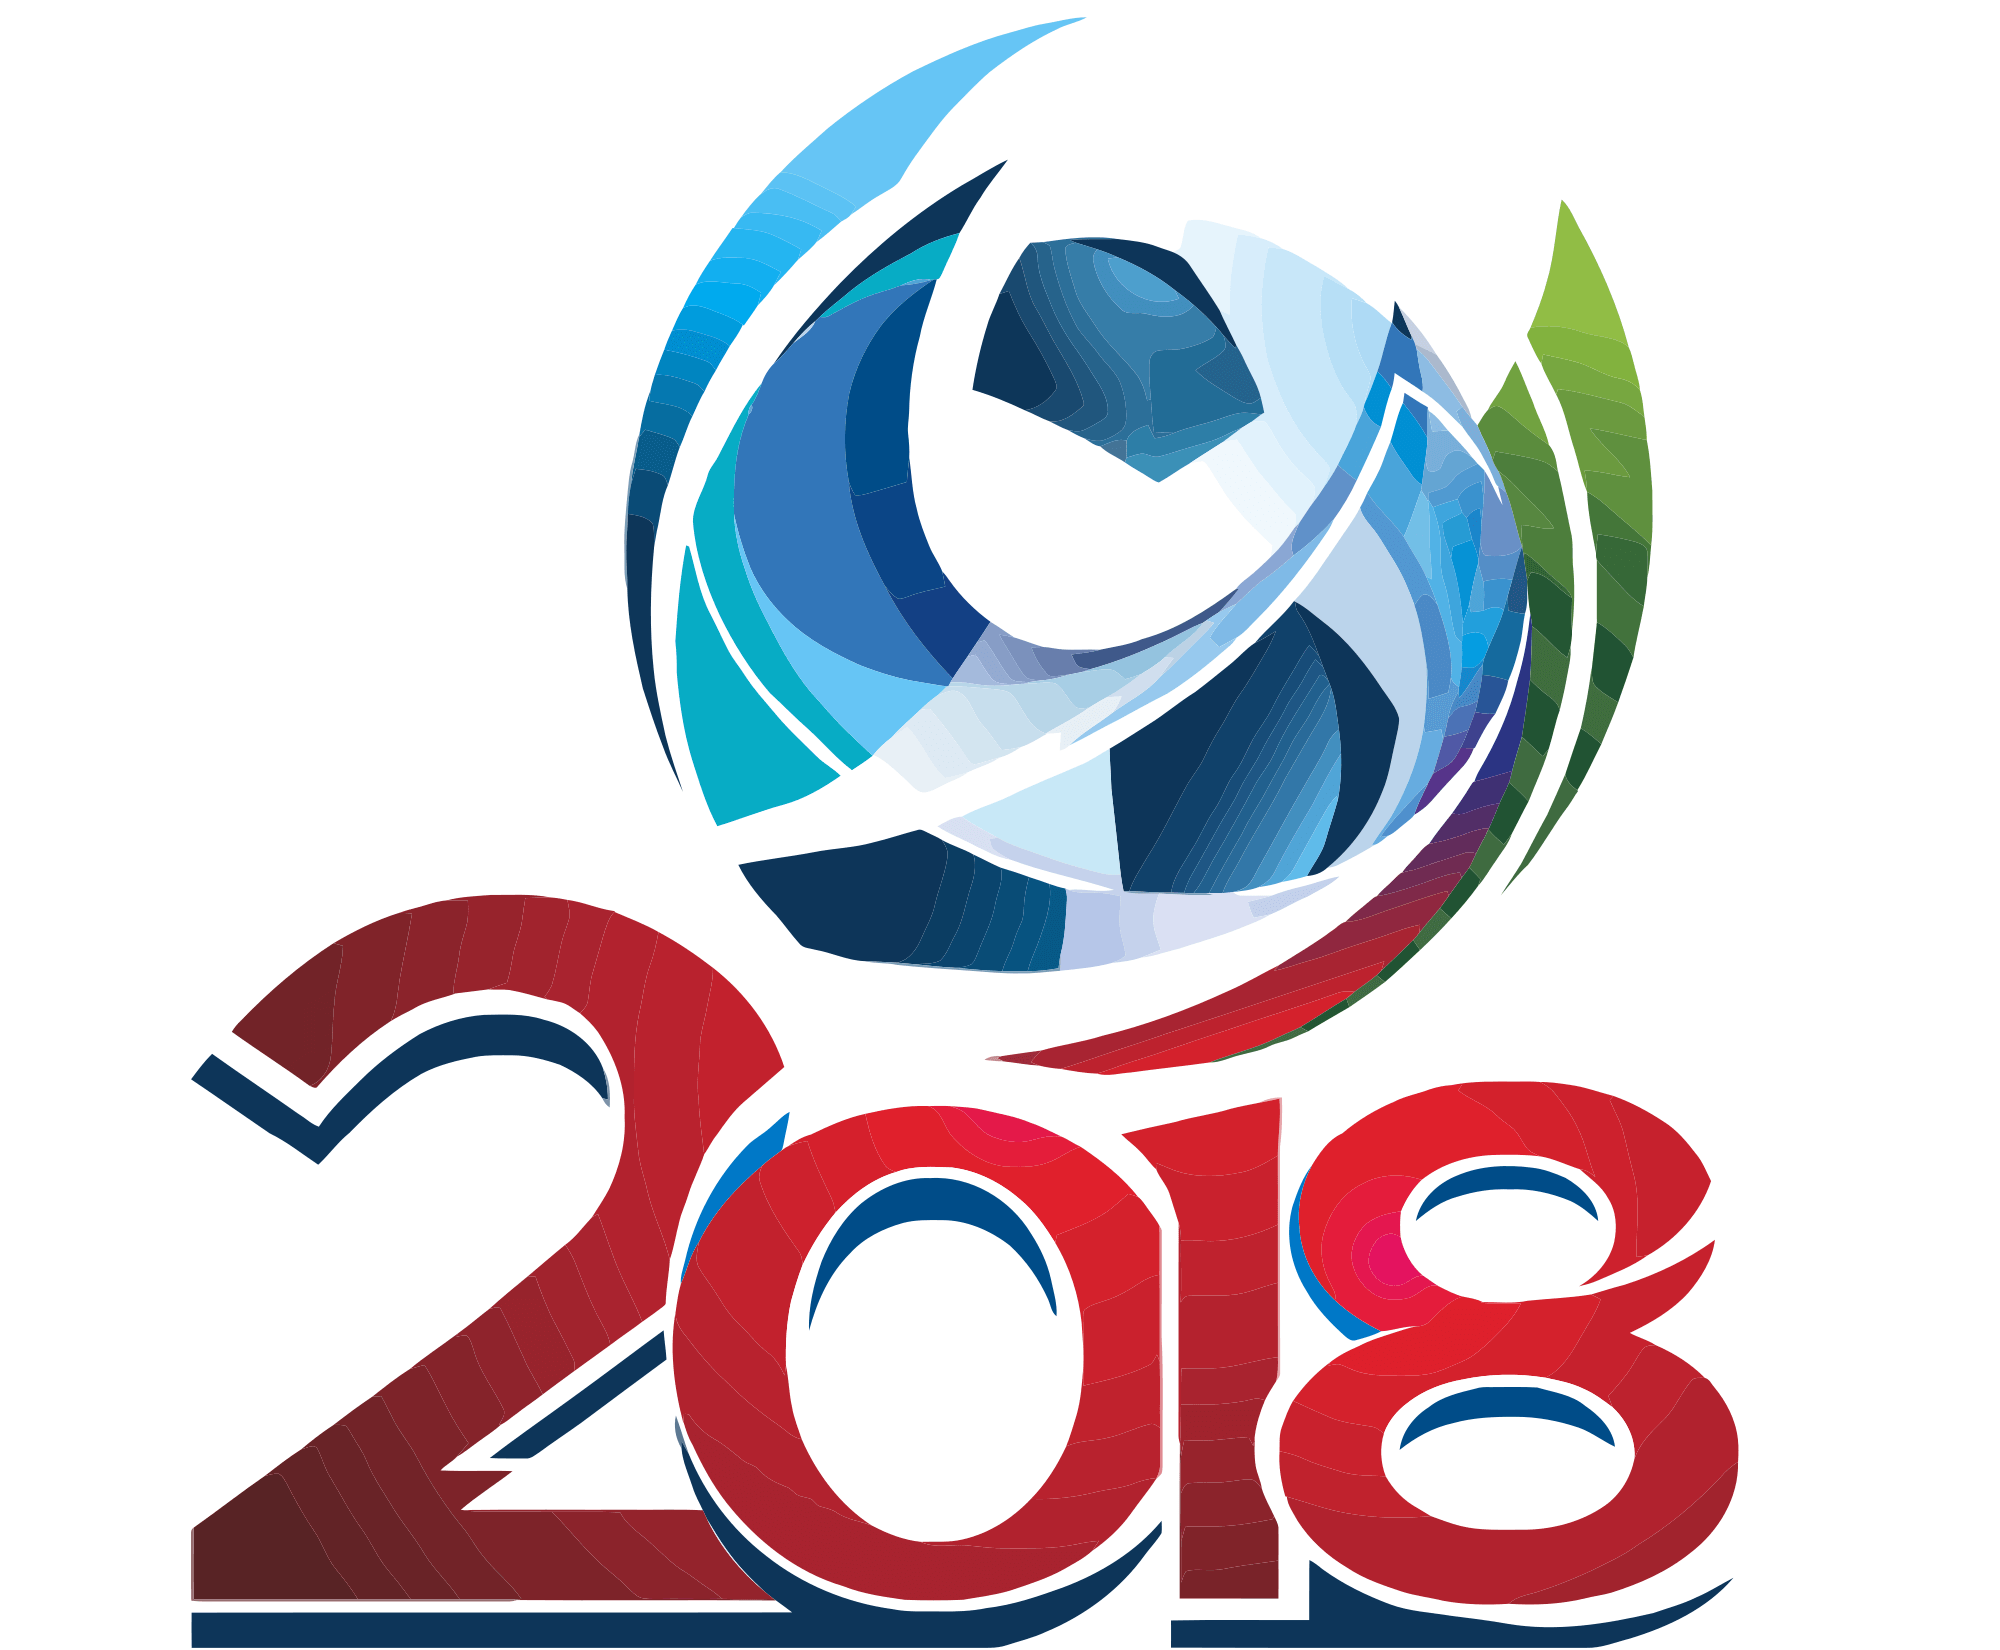 Google 2018 Logo - FIFA World Cup